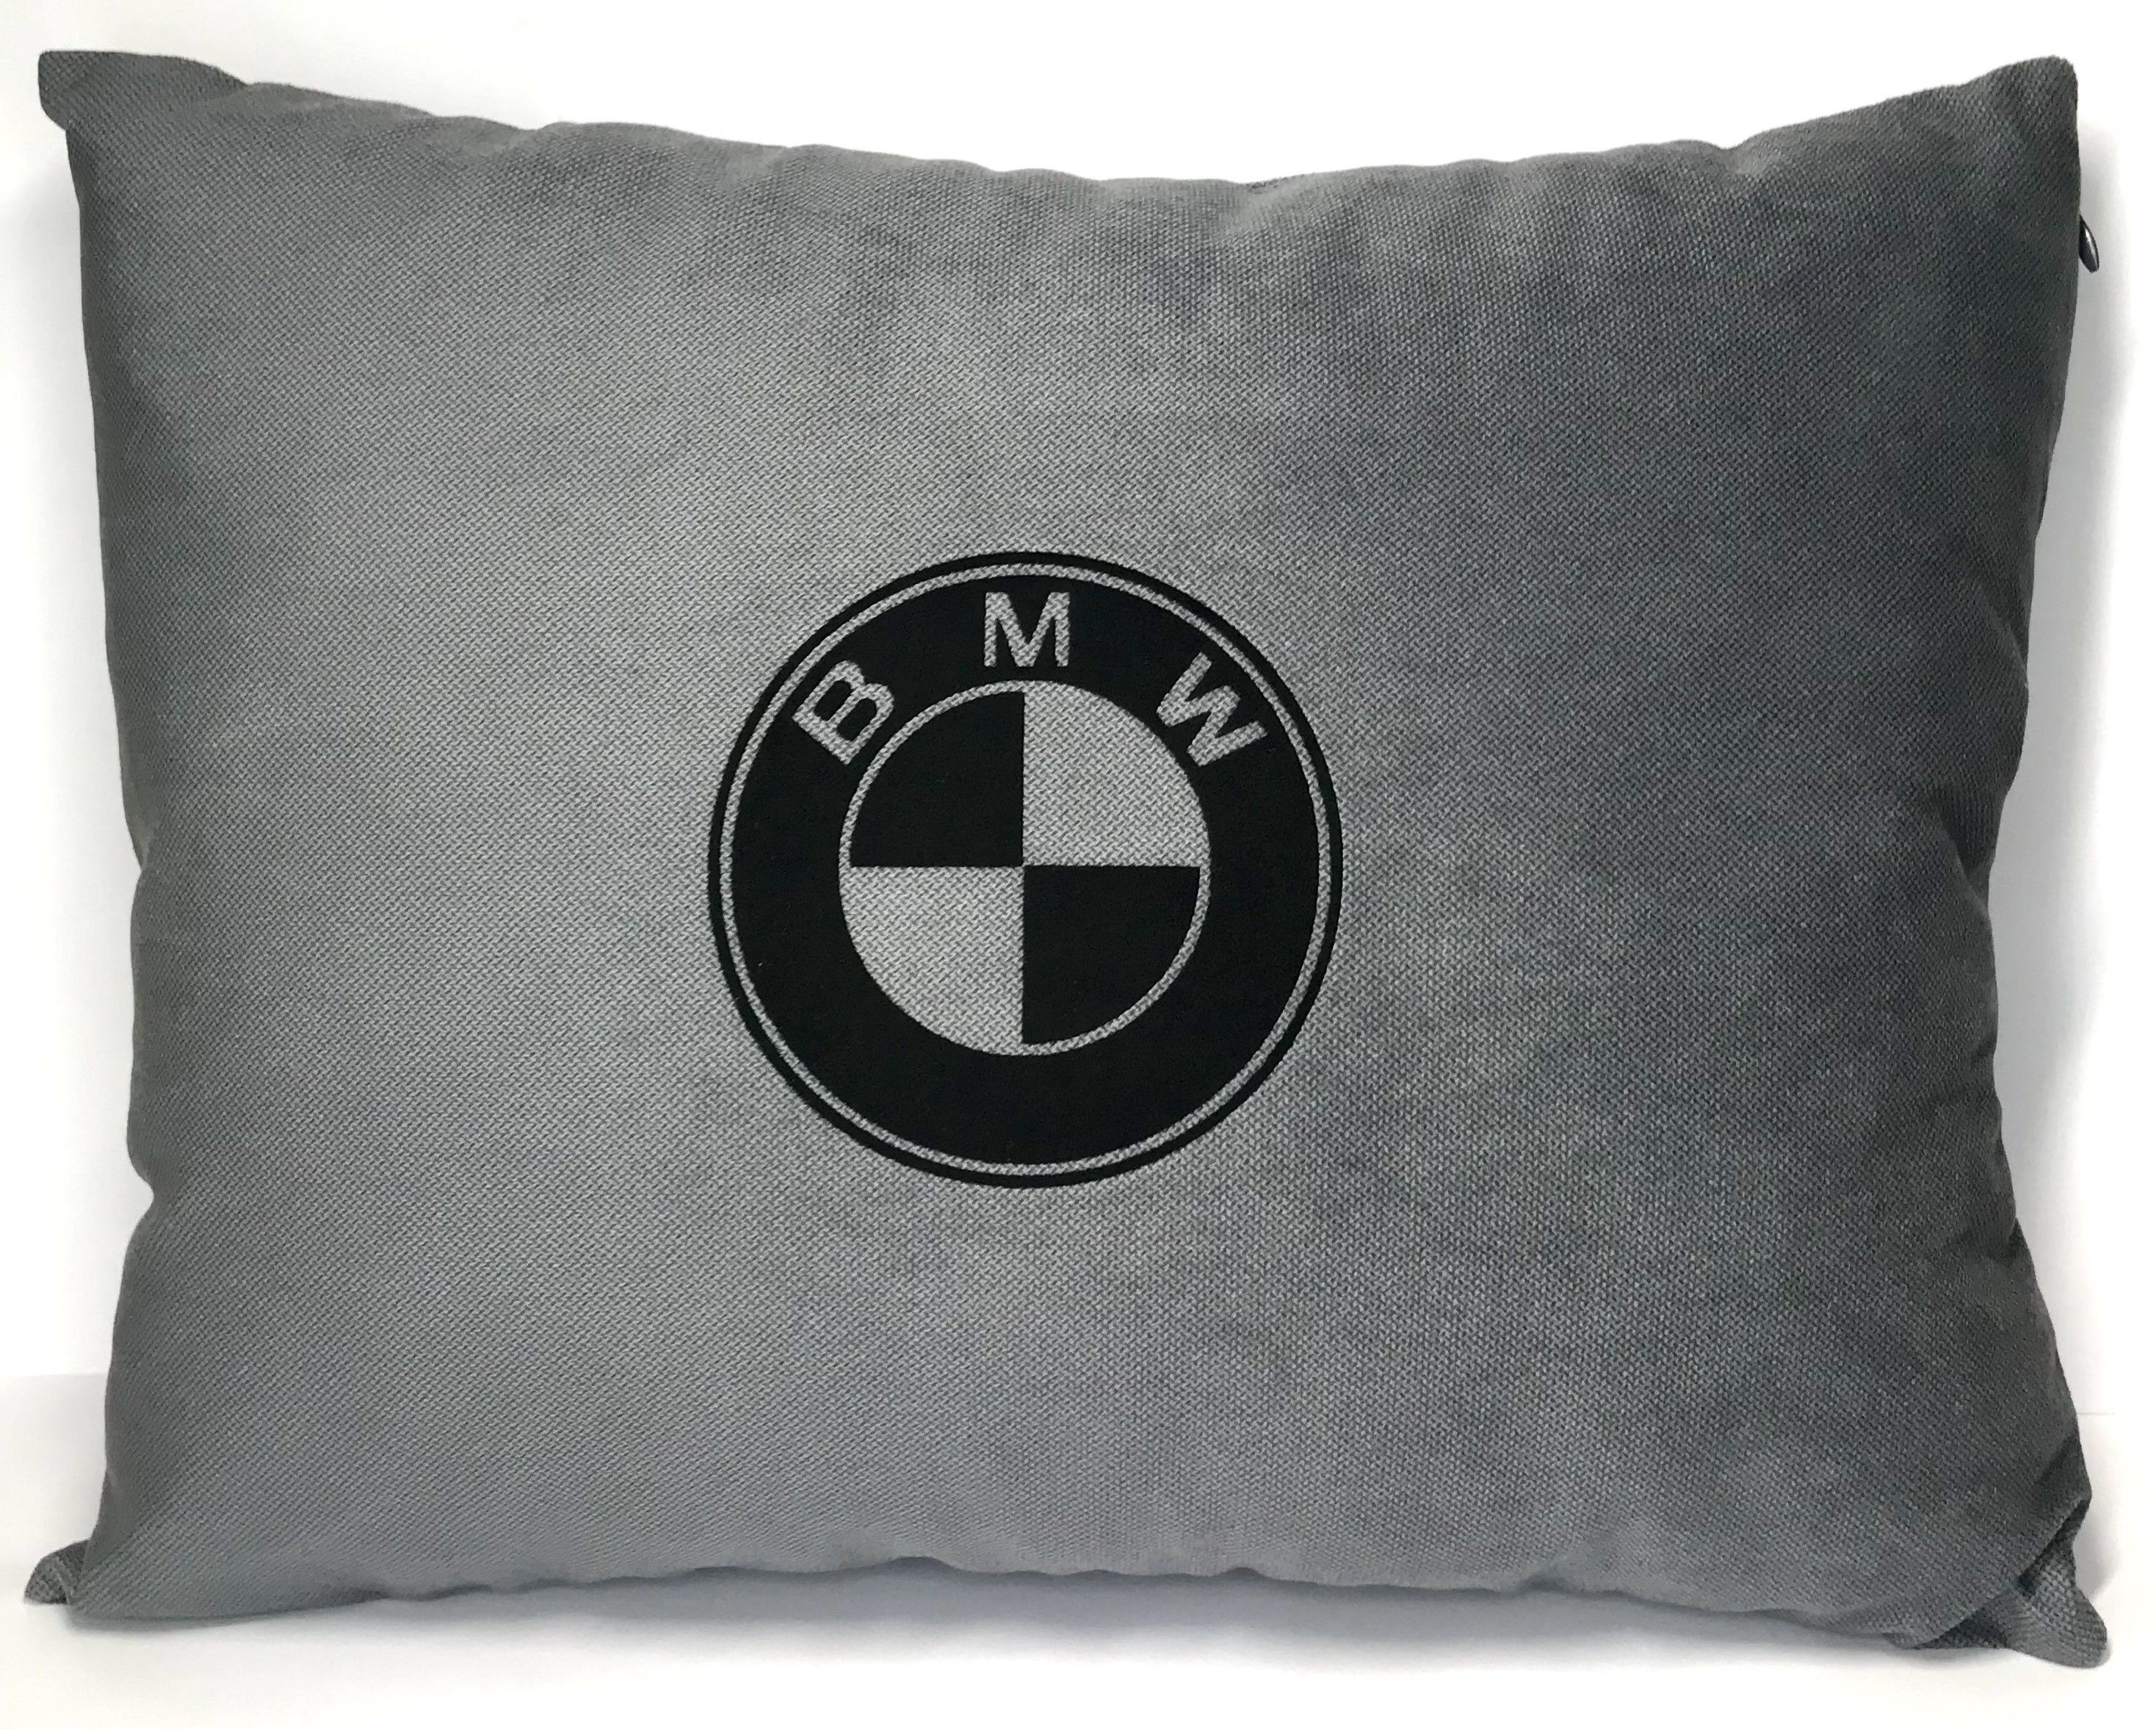 Купить подушки бмв. Подушка с логотипом BMW. Подушка БМВ В машину. Постельное белье с логотипом БМВ. Полотенце с эмблемой БМВ.